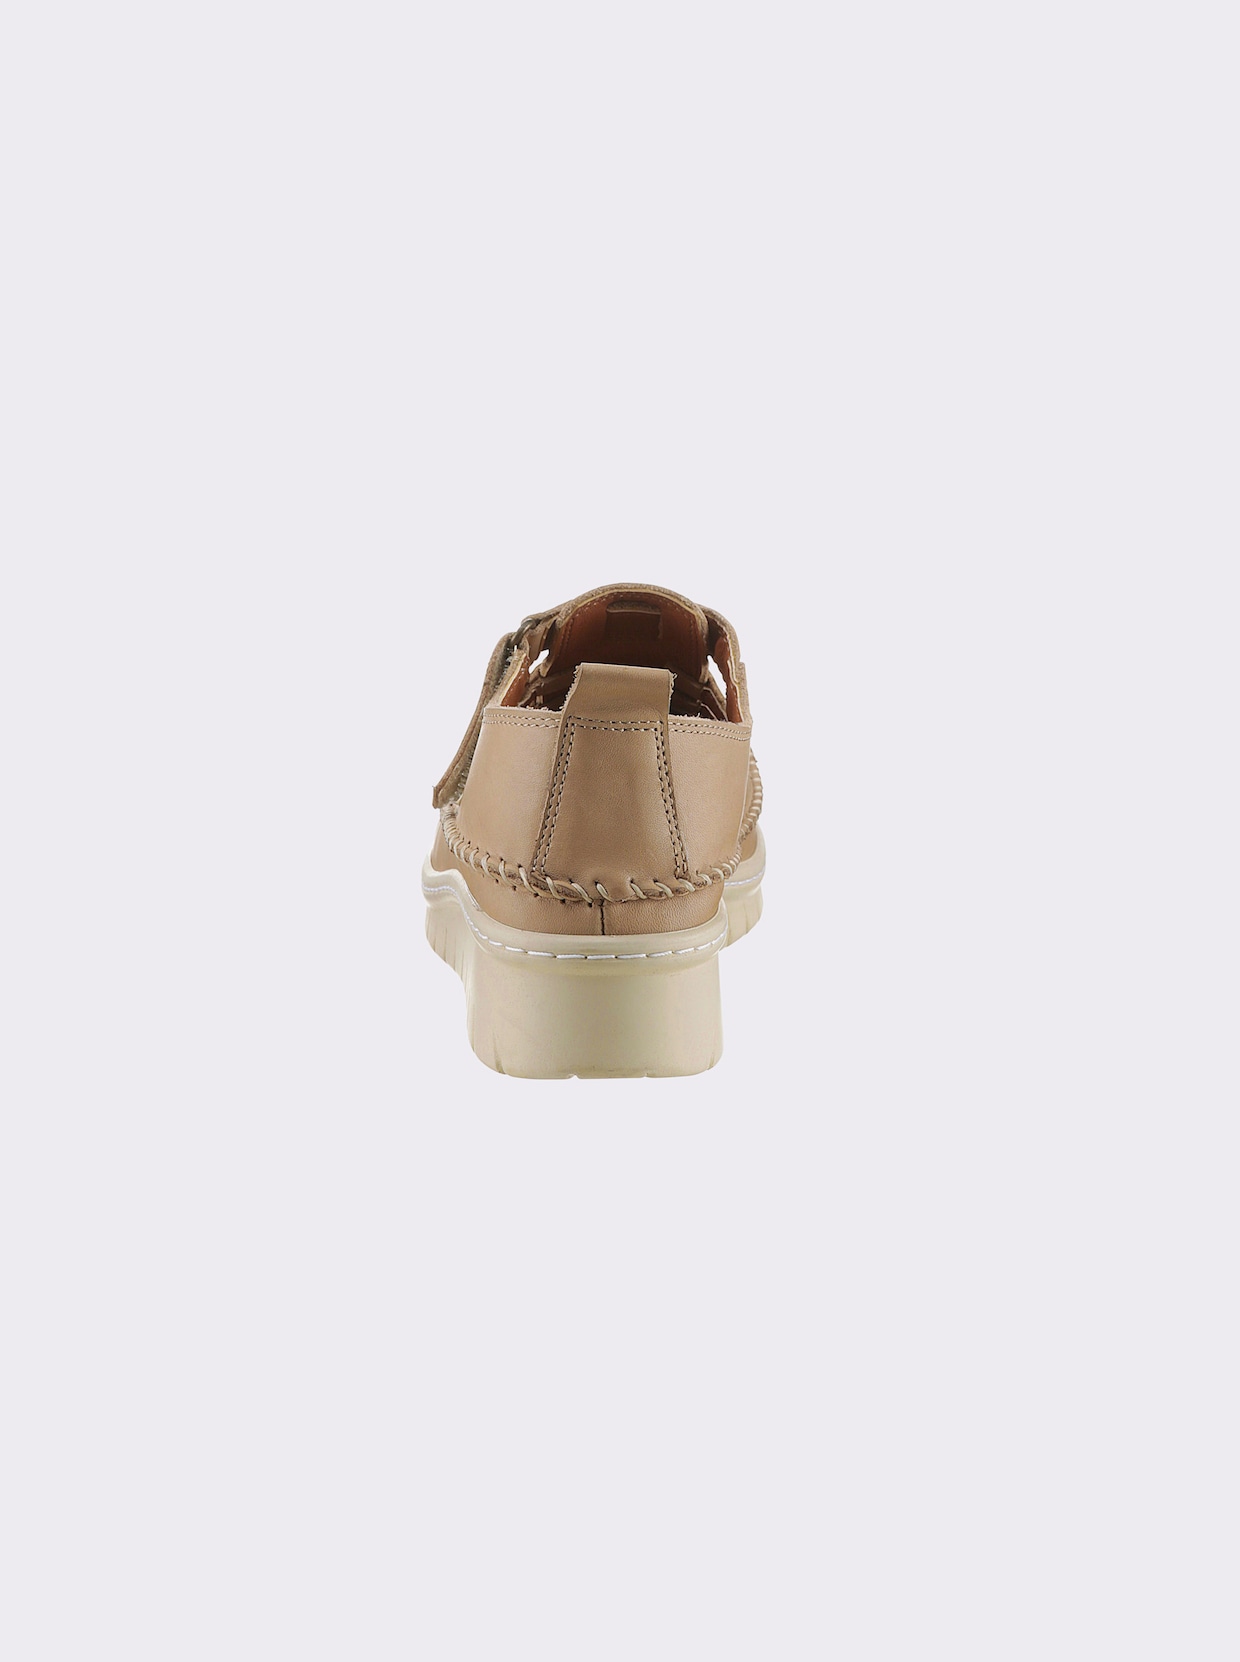 airsoft comfort+ Klittenbandschoen - beige